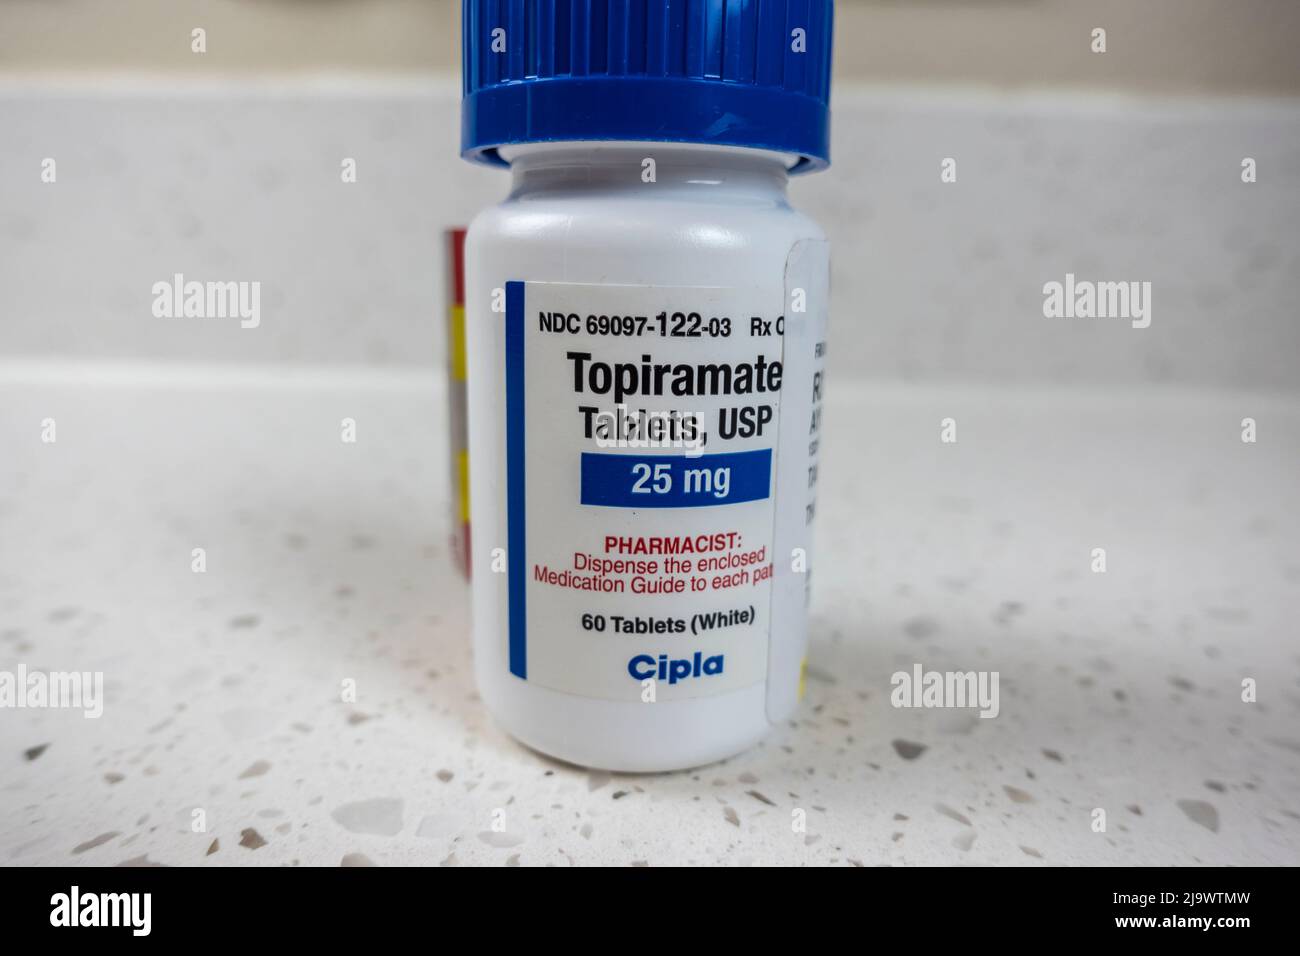 Seattle, WA USA - circa May 2022: Close up view of an angled bottle of Topiramate medication. Stock Photo